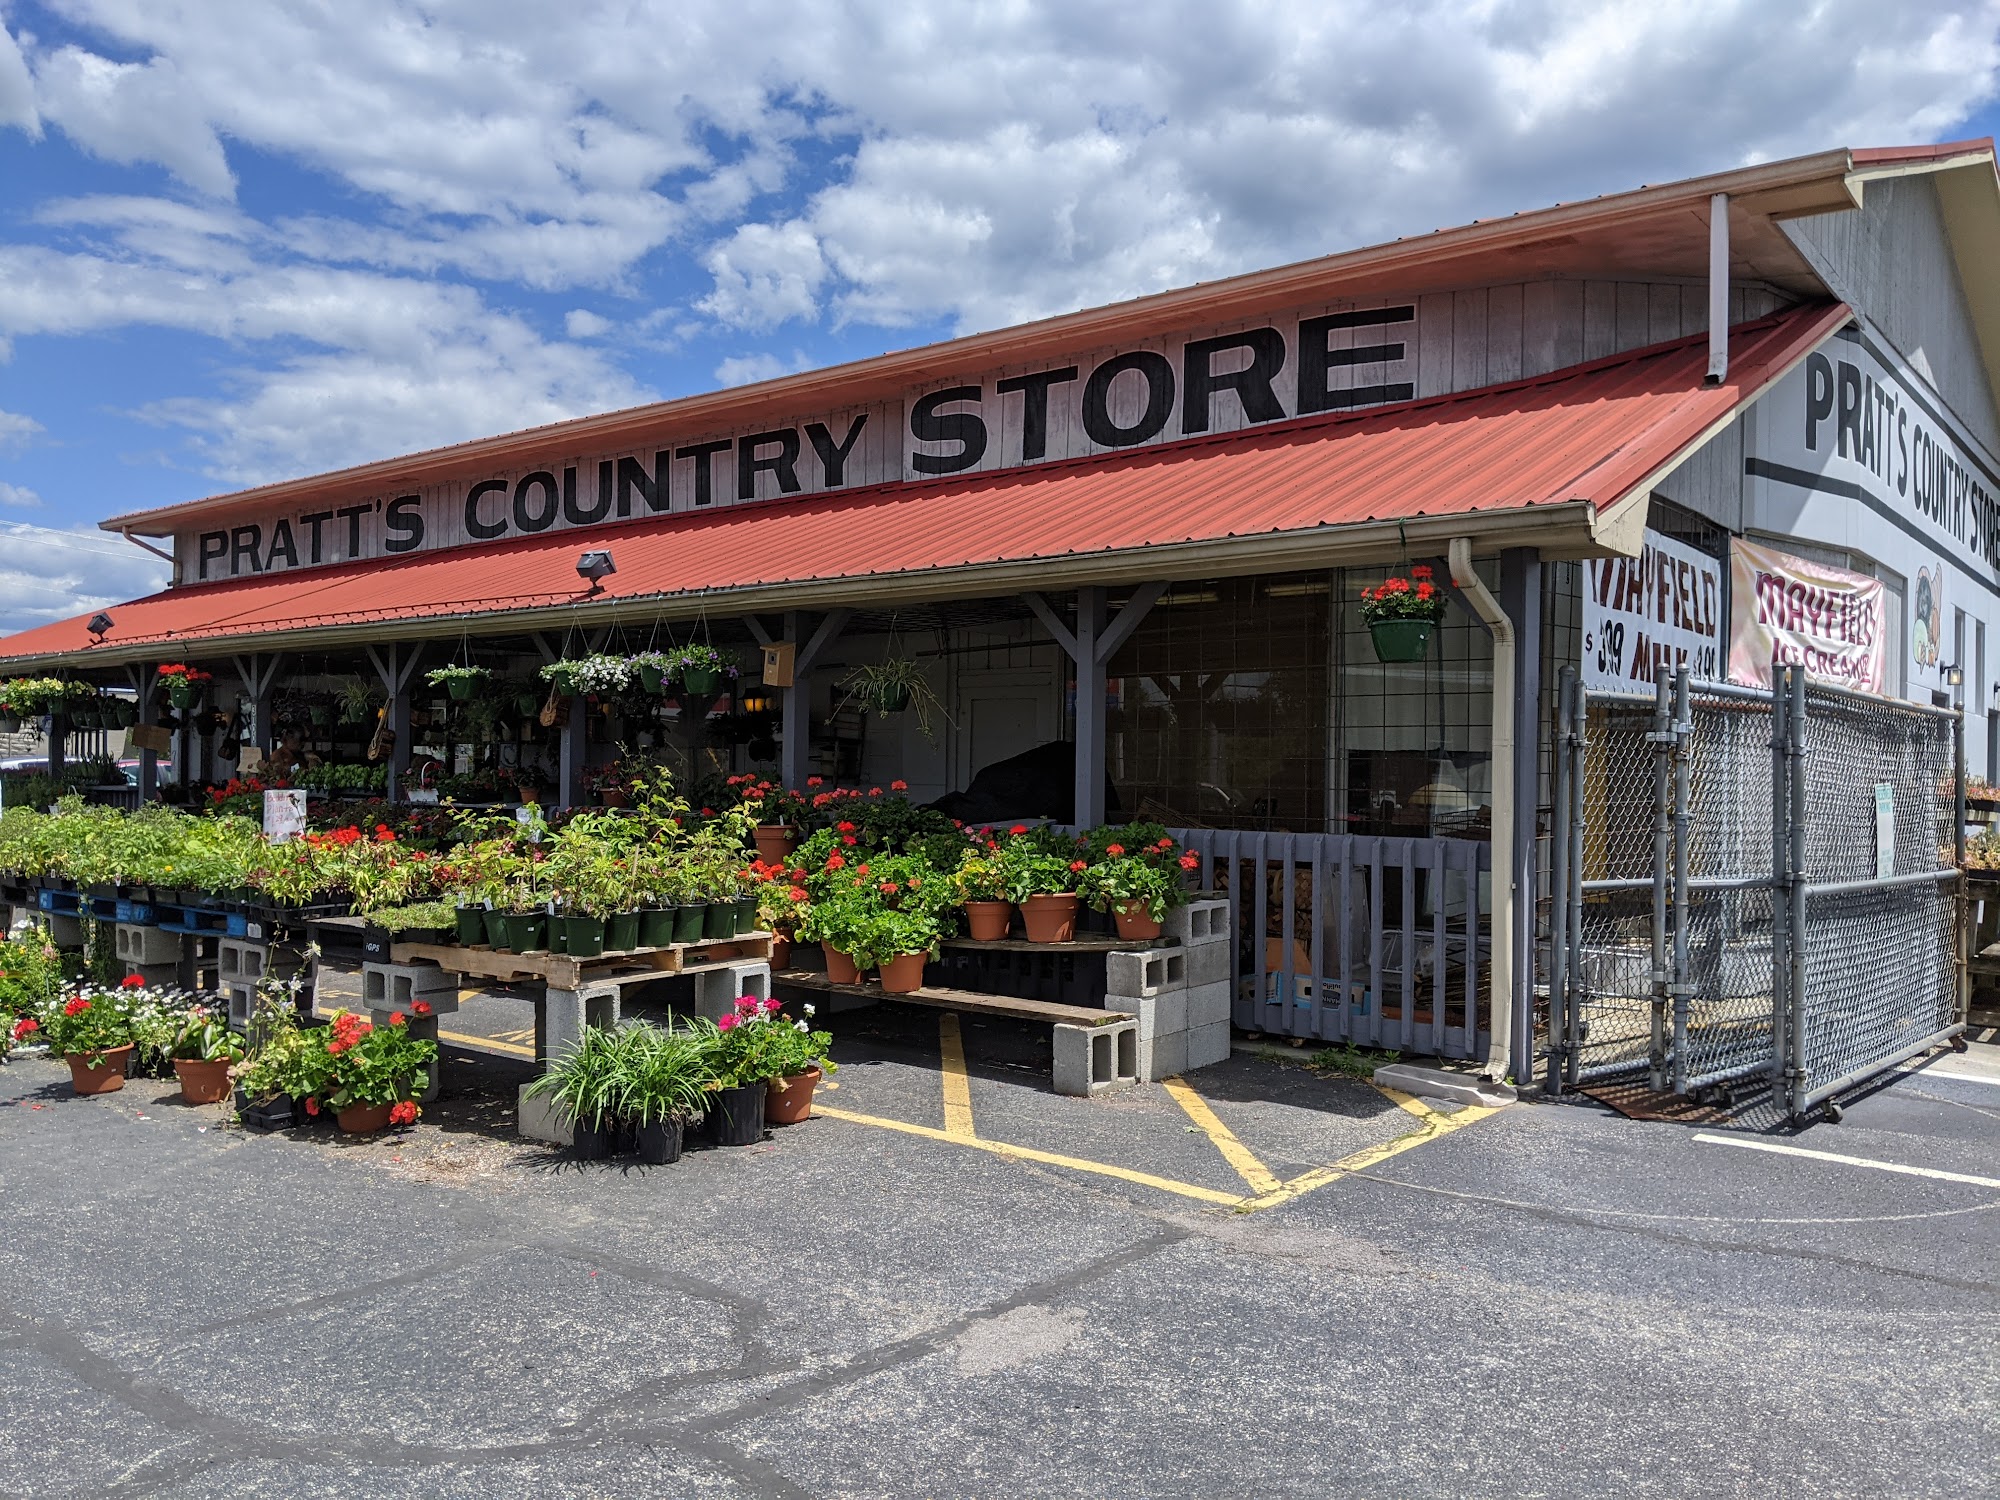 Pratt's Country Store